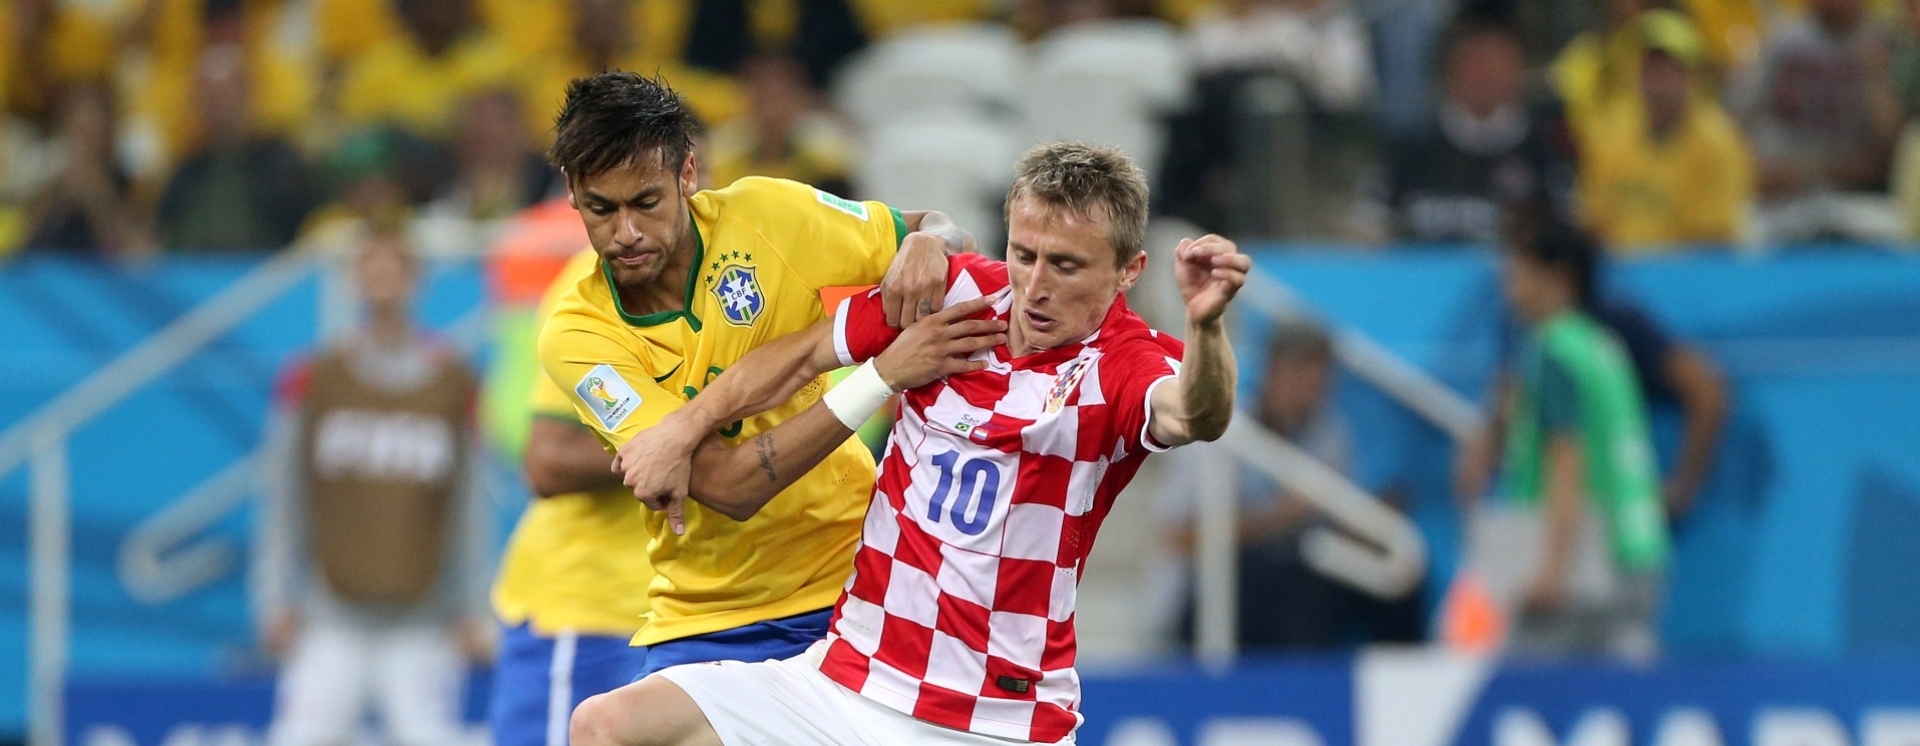 Μουντιάλ 2022, Βραζιλία - Κροατία: Σάμπα πριν τα... ημιτελικά!